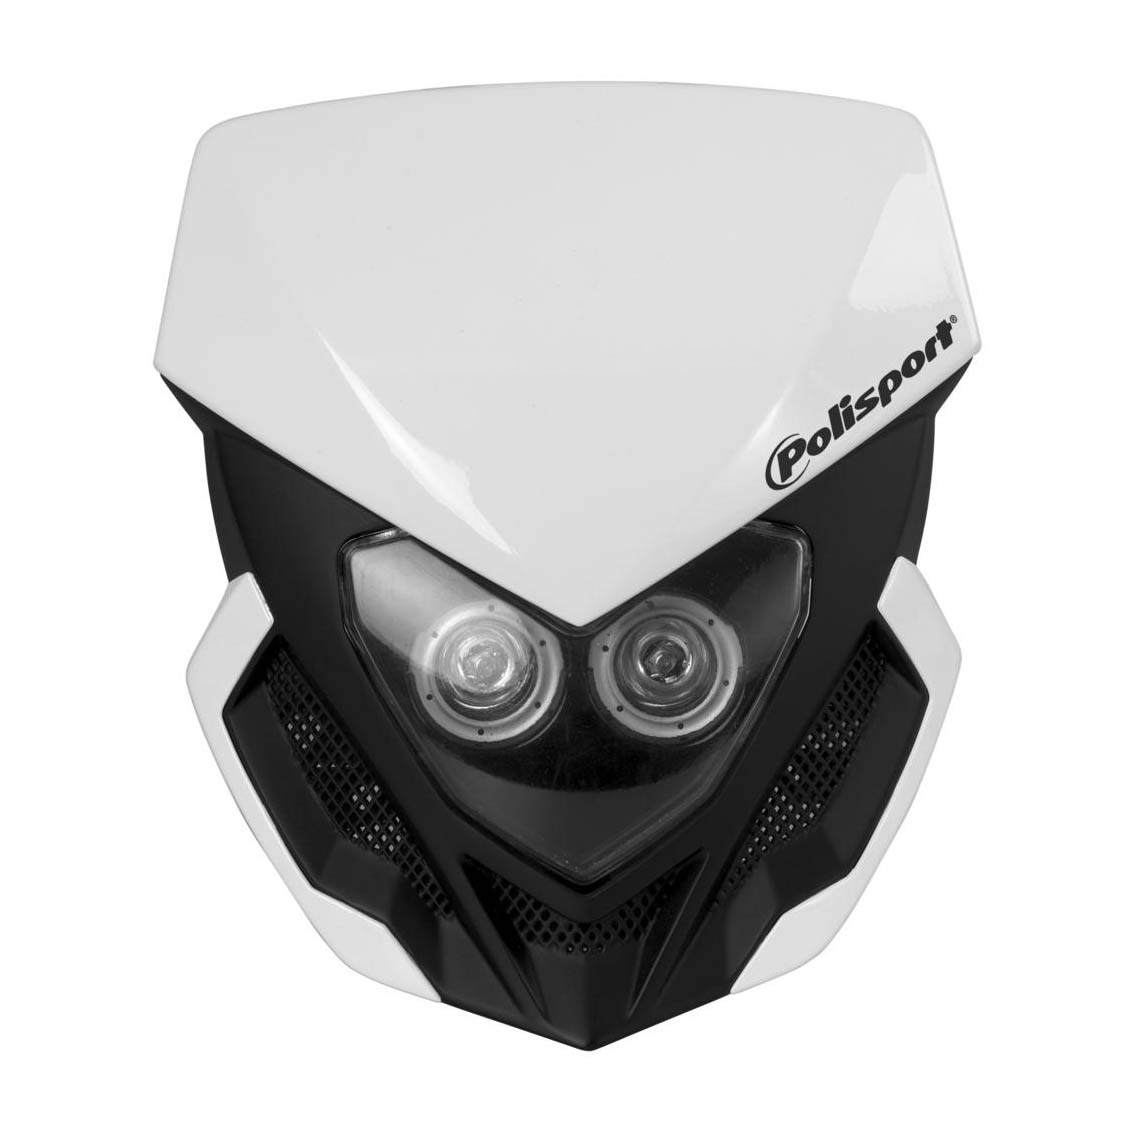 Polisport Lookos LED Lampenmaske mit Batterie 12V/5W weiss/schwarz